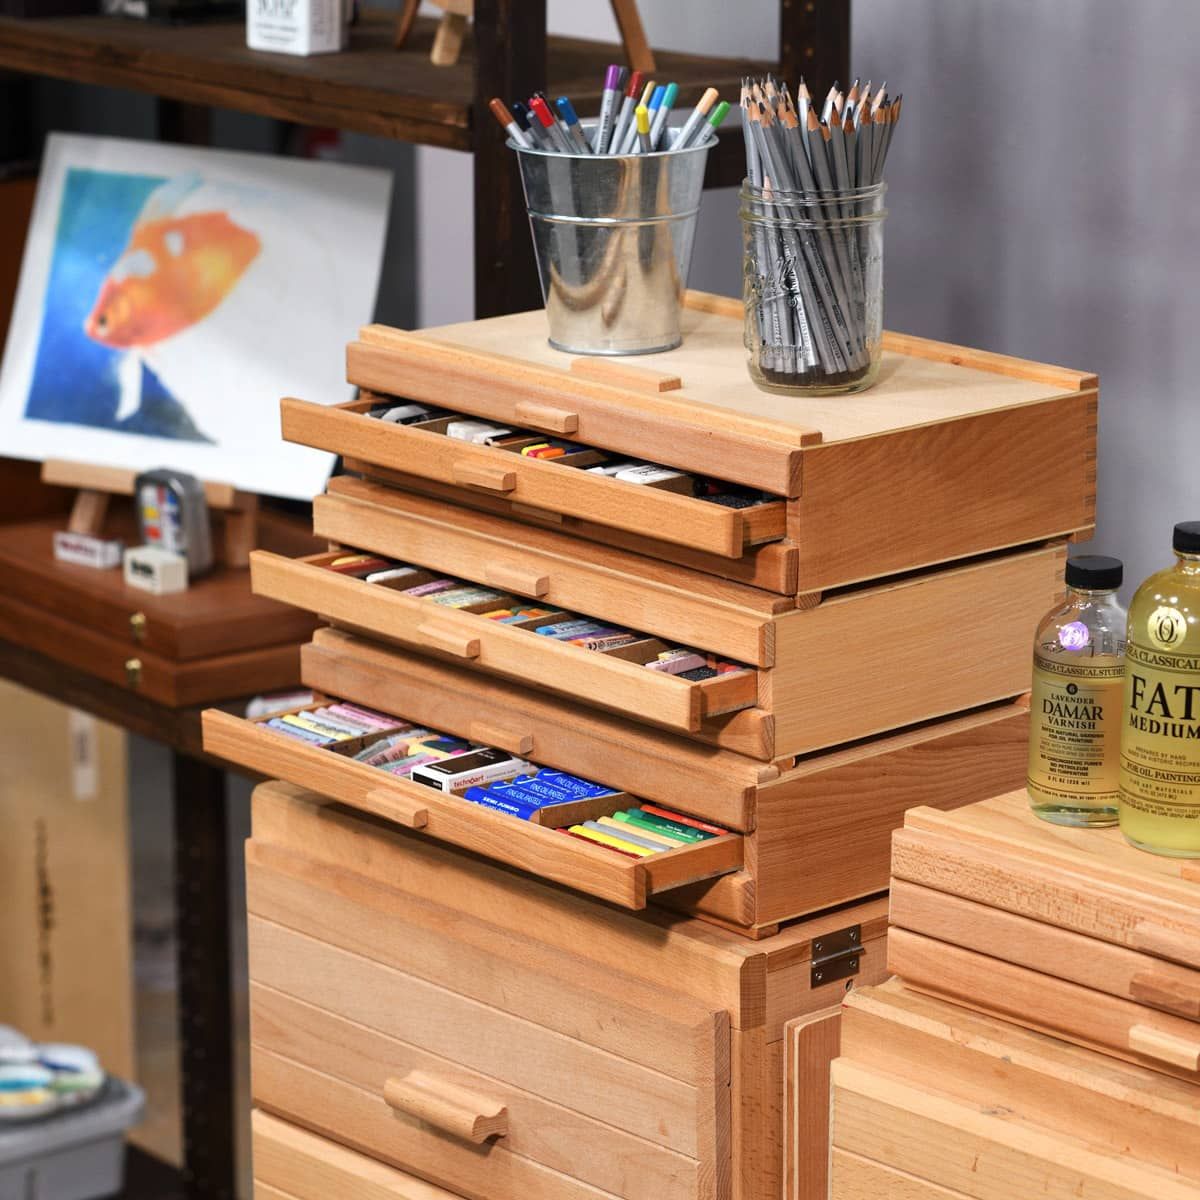 Pencil Cases & Rolls - Art Material Storage - Studio